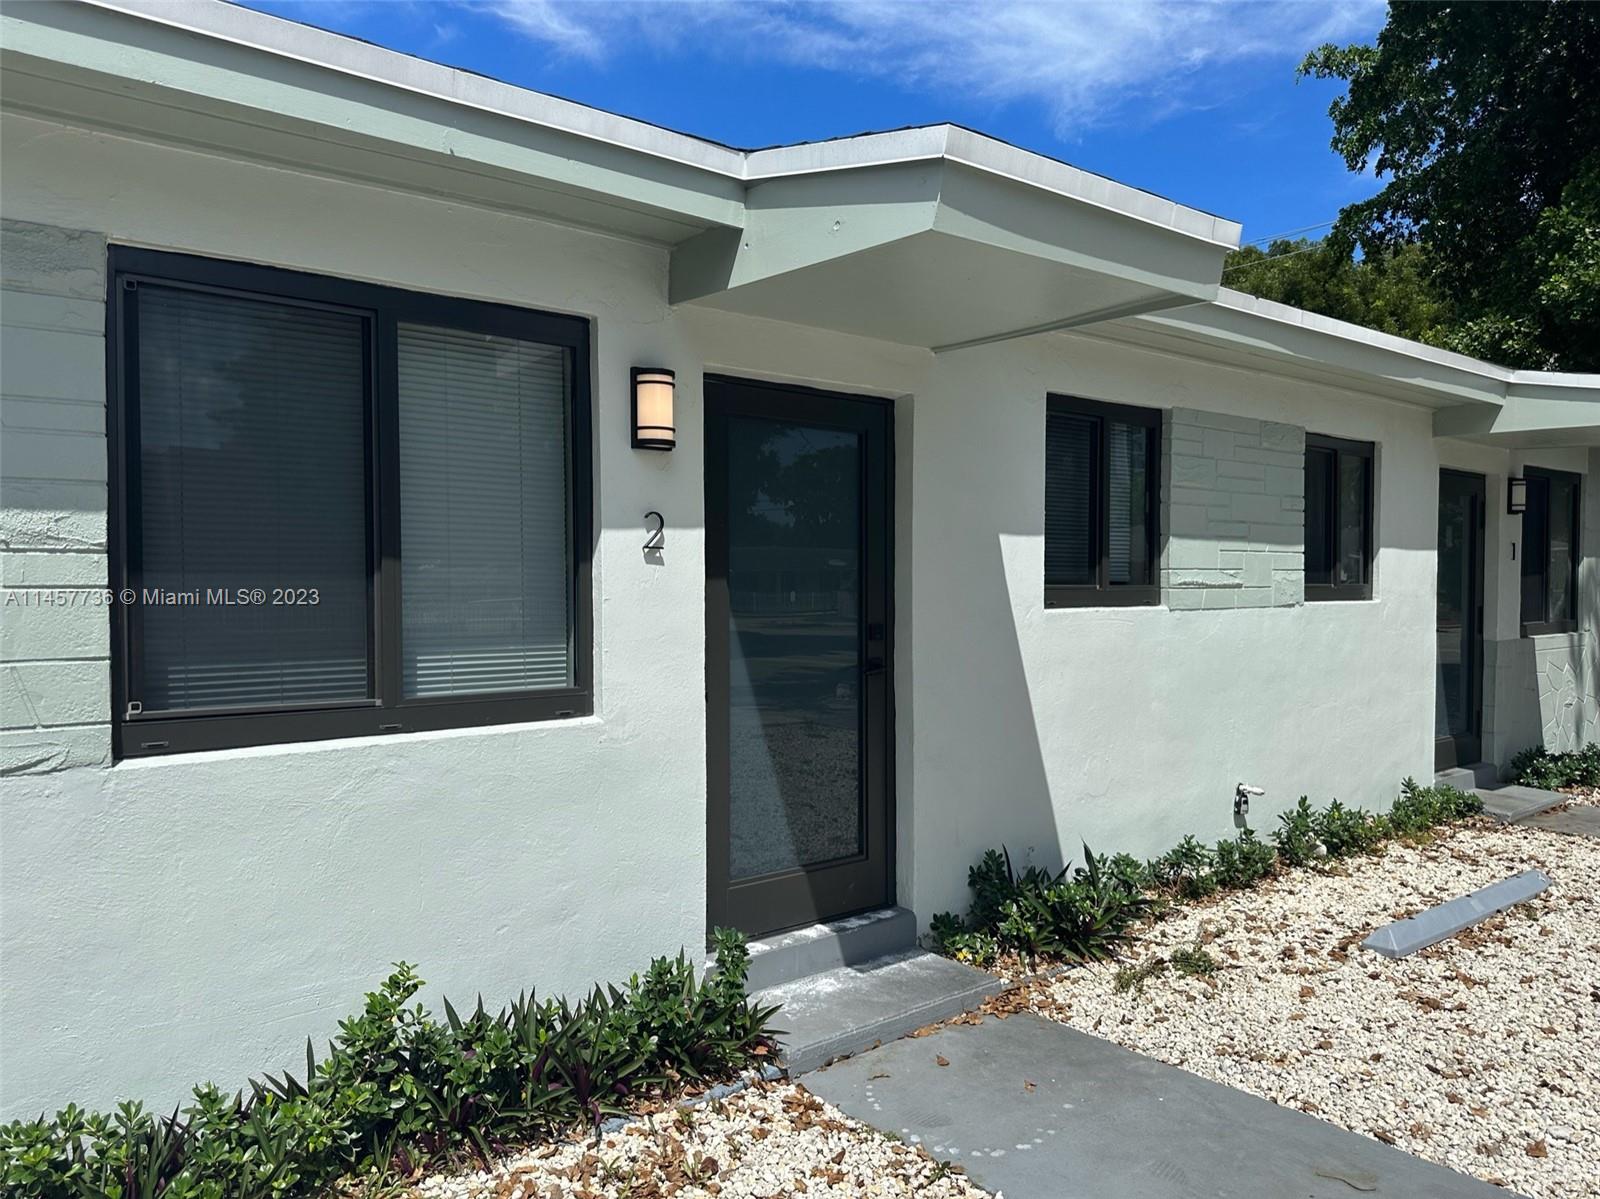 Rental Property at 1901 Nw 30th St, Miami, Broward County, Florida -  - $899,900 MO.